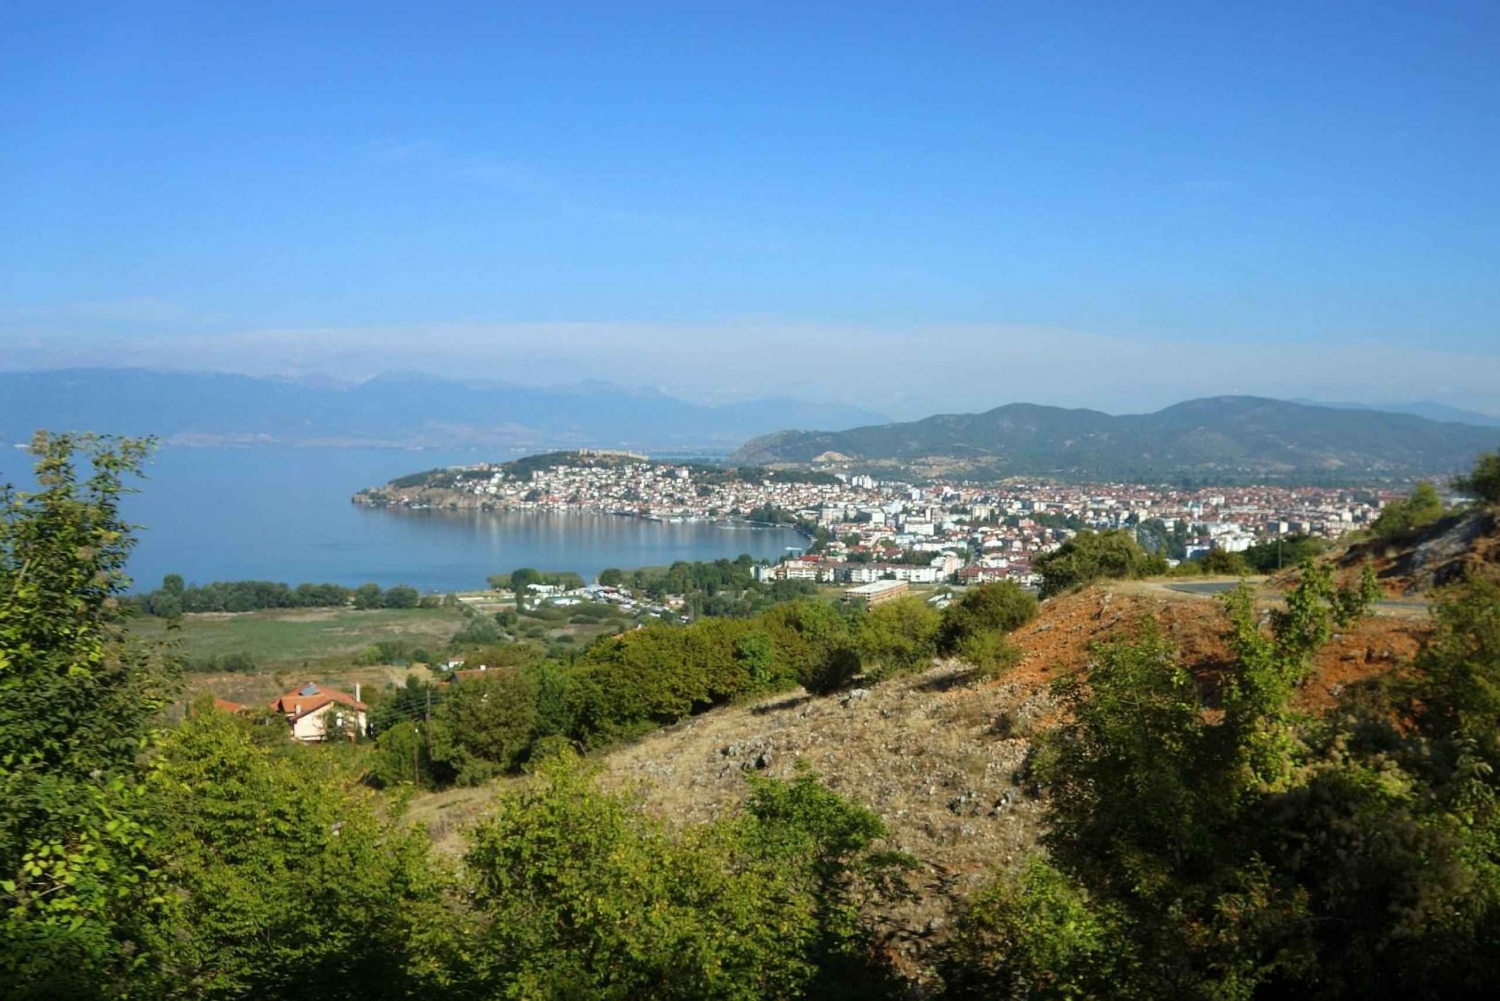 Caminhando pelos vilarejos nas montanhas e à tarde na praia, a partir de Ohrid.